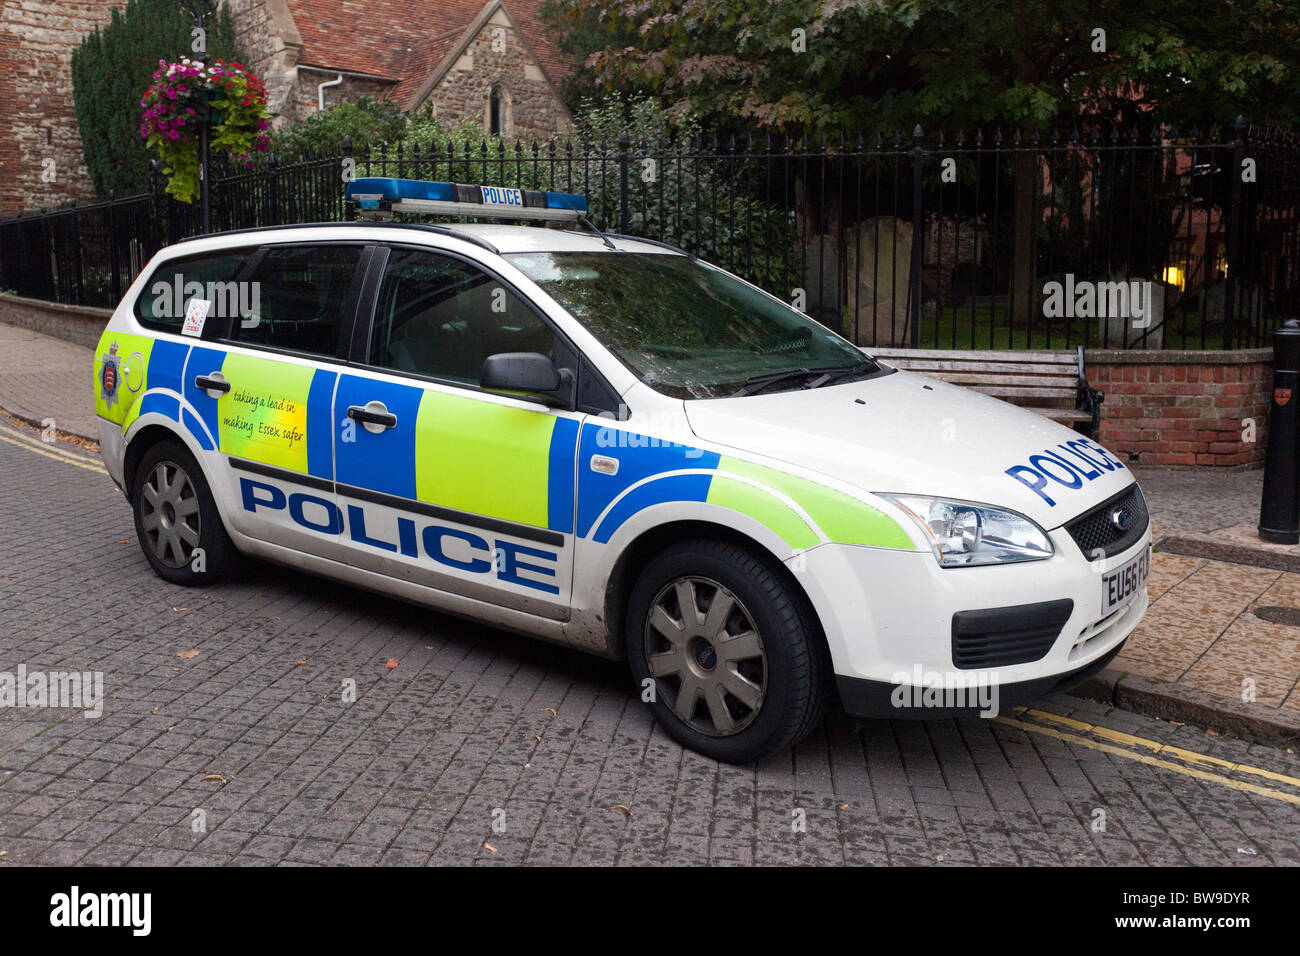 Voiture de police garée dans une rue, UK Banque D'Images